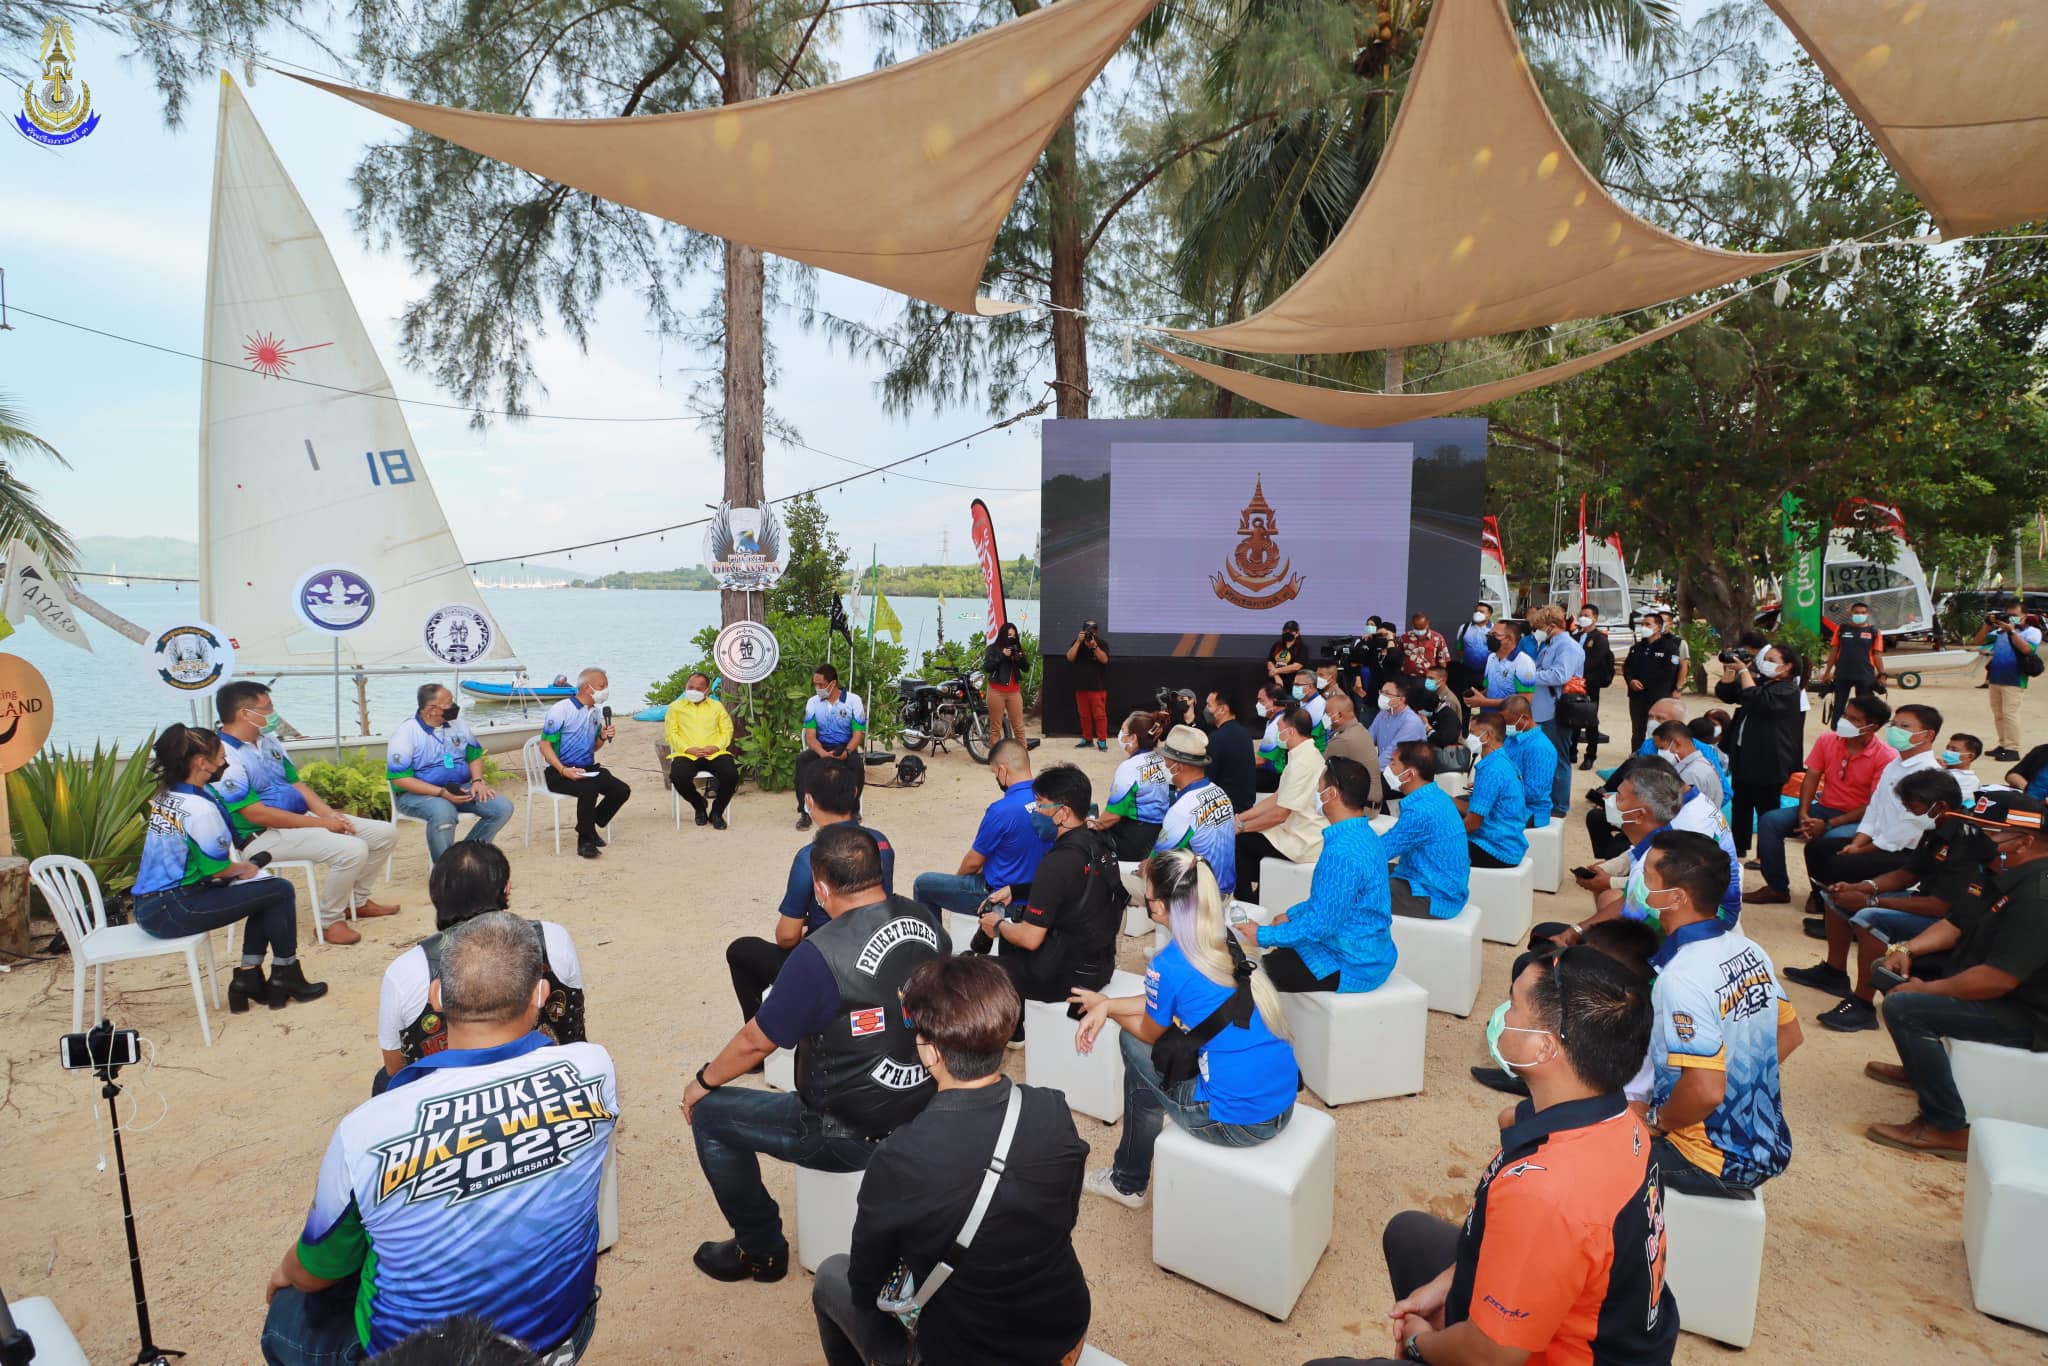 งานแถลงข่าว “Phuket Bike Week 2022" ครั้งที่ 26 